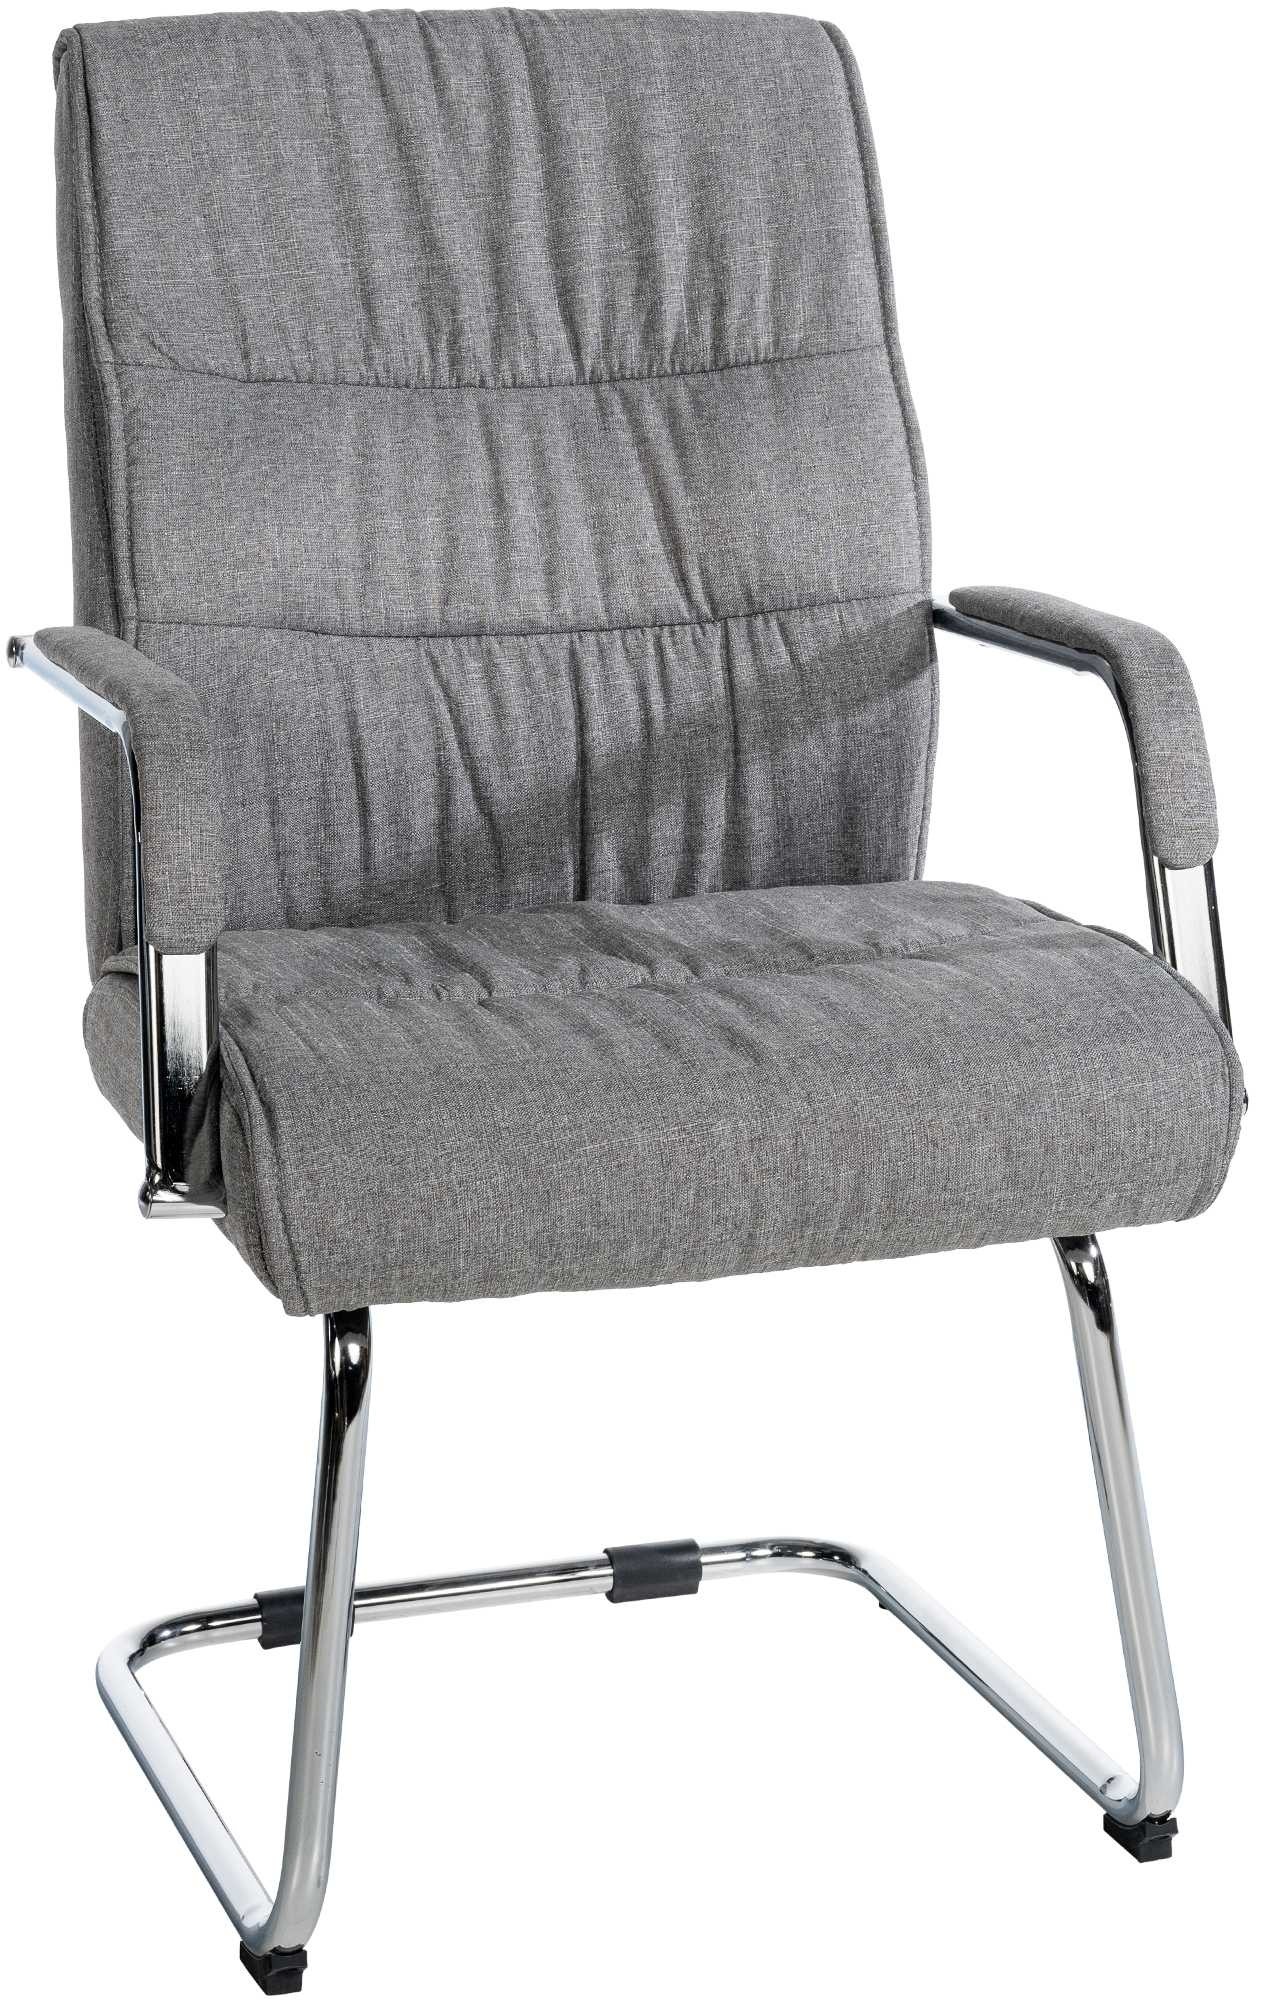 Chaise cantilever Sievert tissu